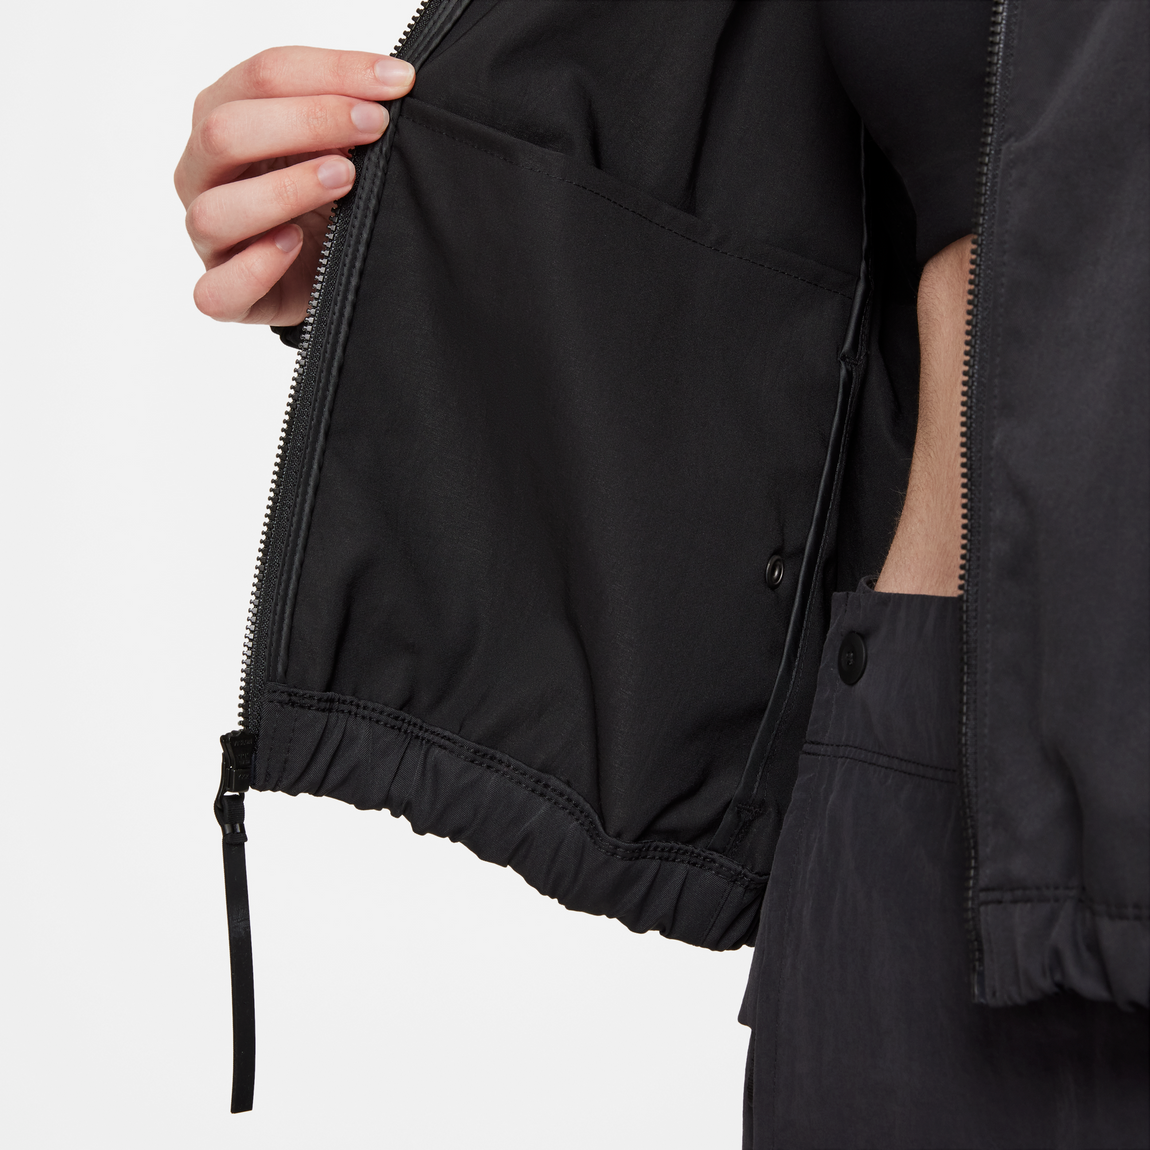 Nike Women's Tech Pack Jacket (Black) - Nike Women's Tech Pack Jacket (Black) - 